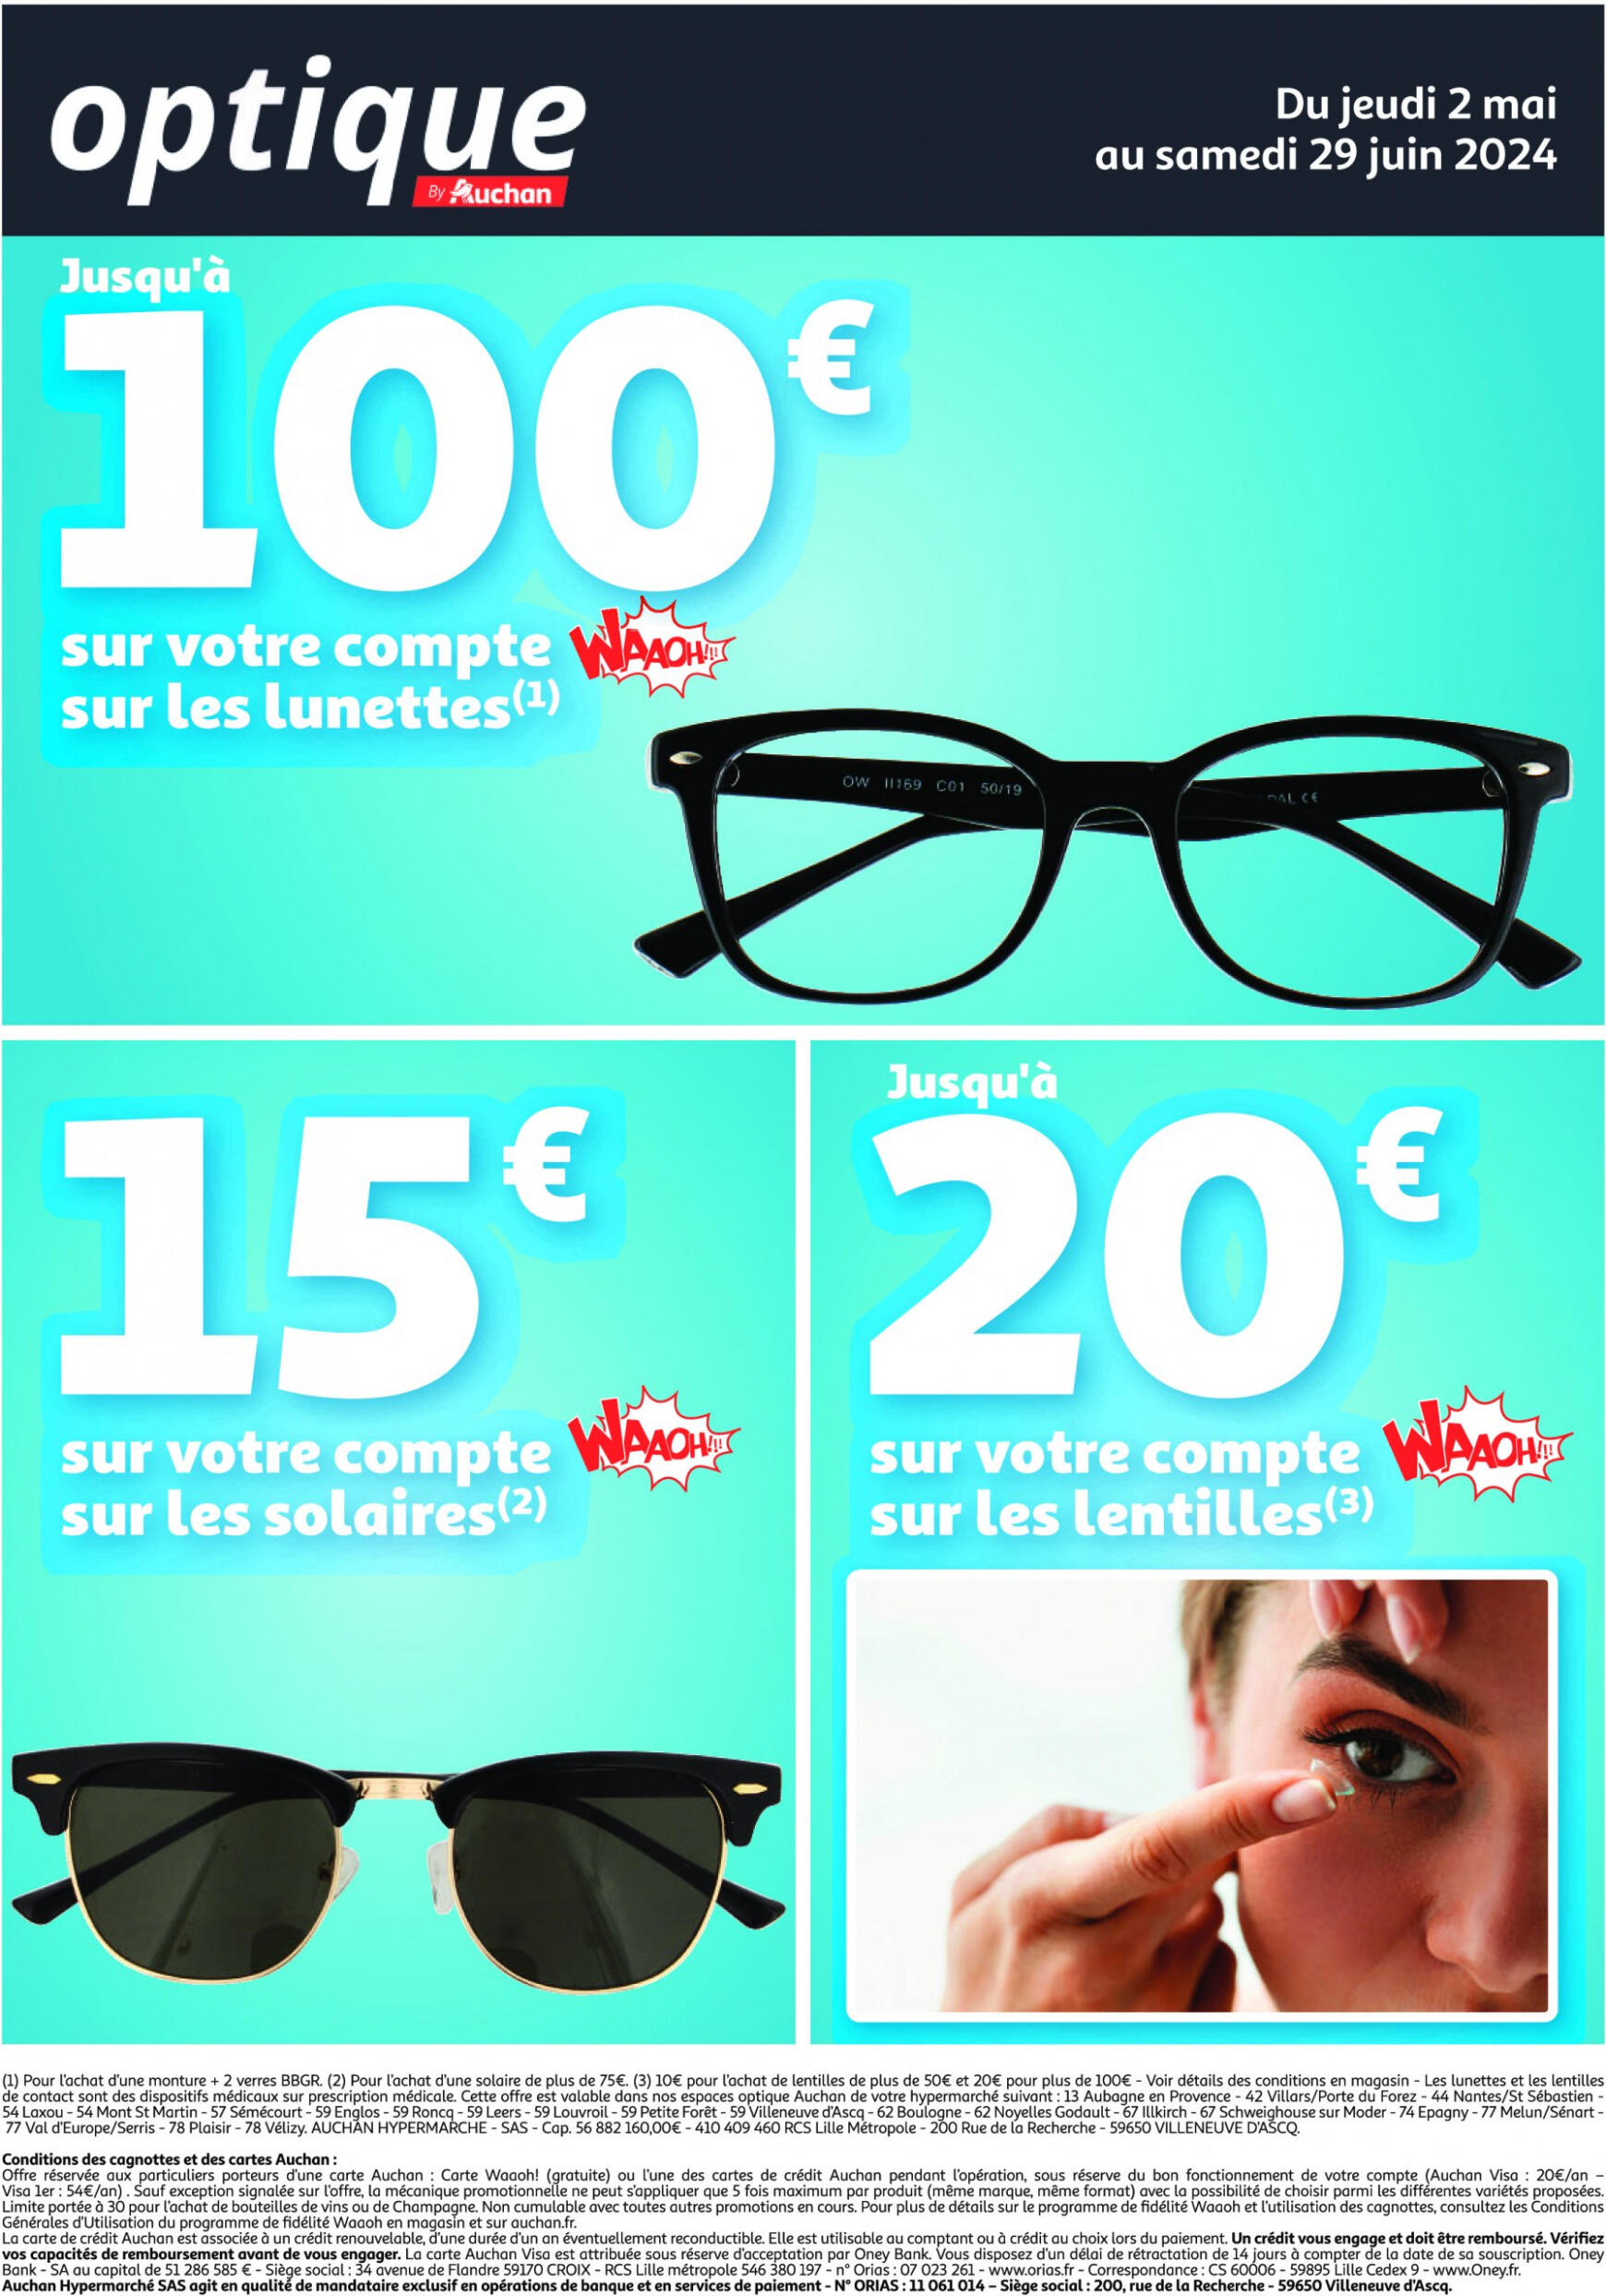 auchan - Prospectus Auchan - Optique actuel 02.05. - 29.06. - page: 1